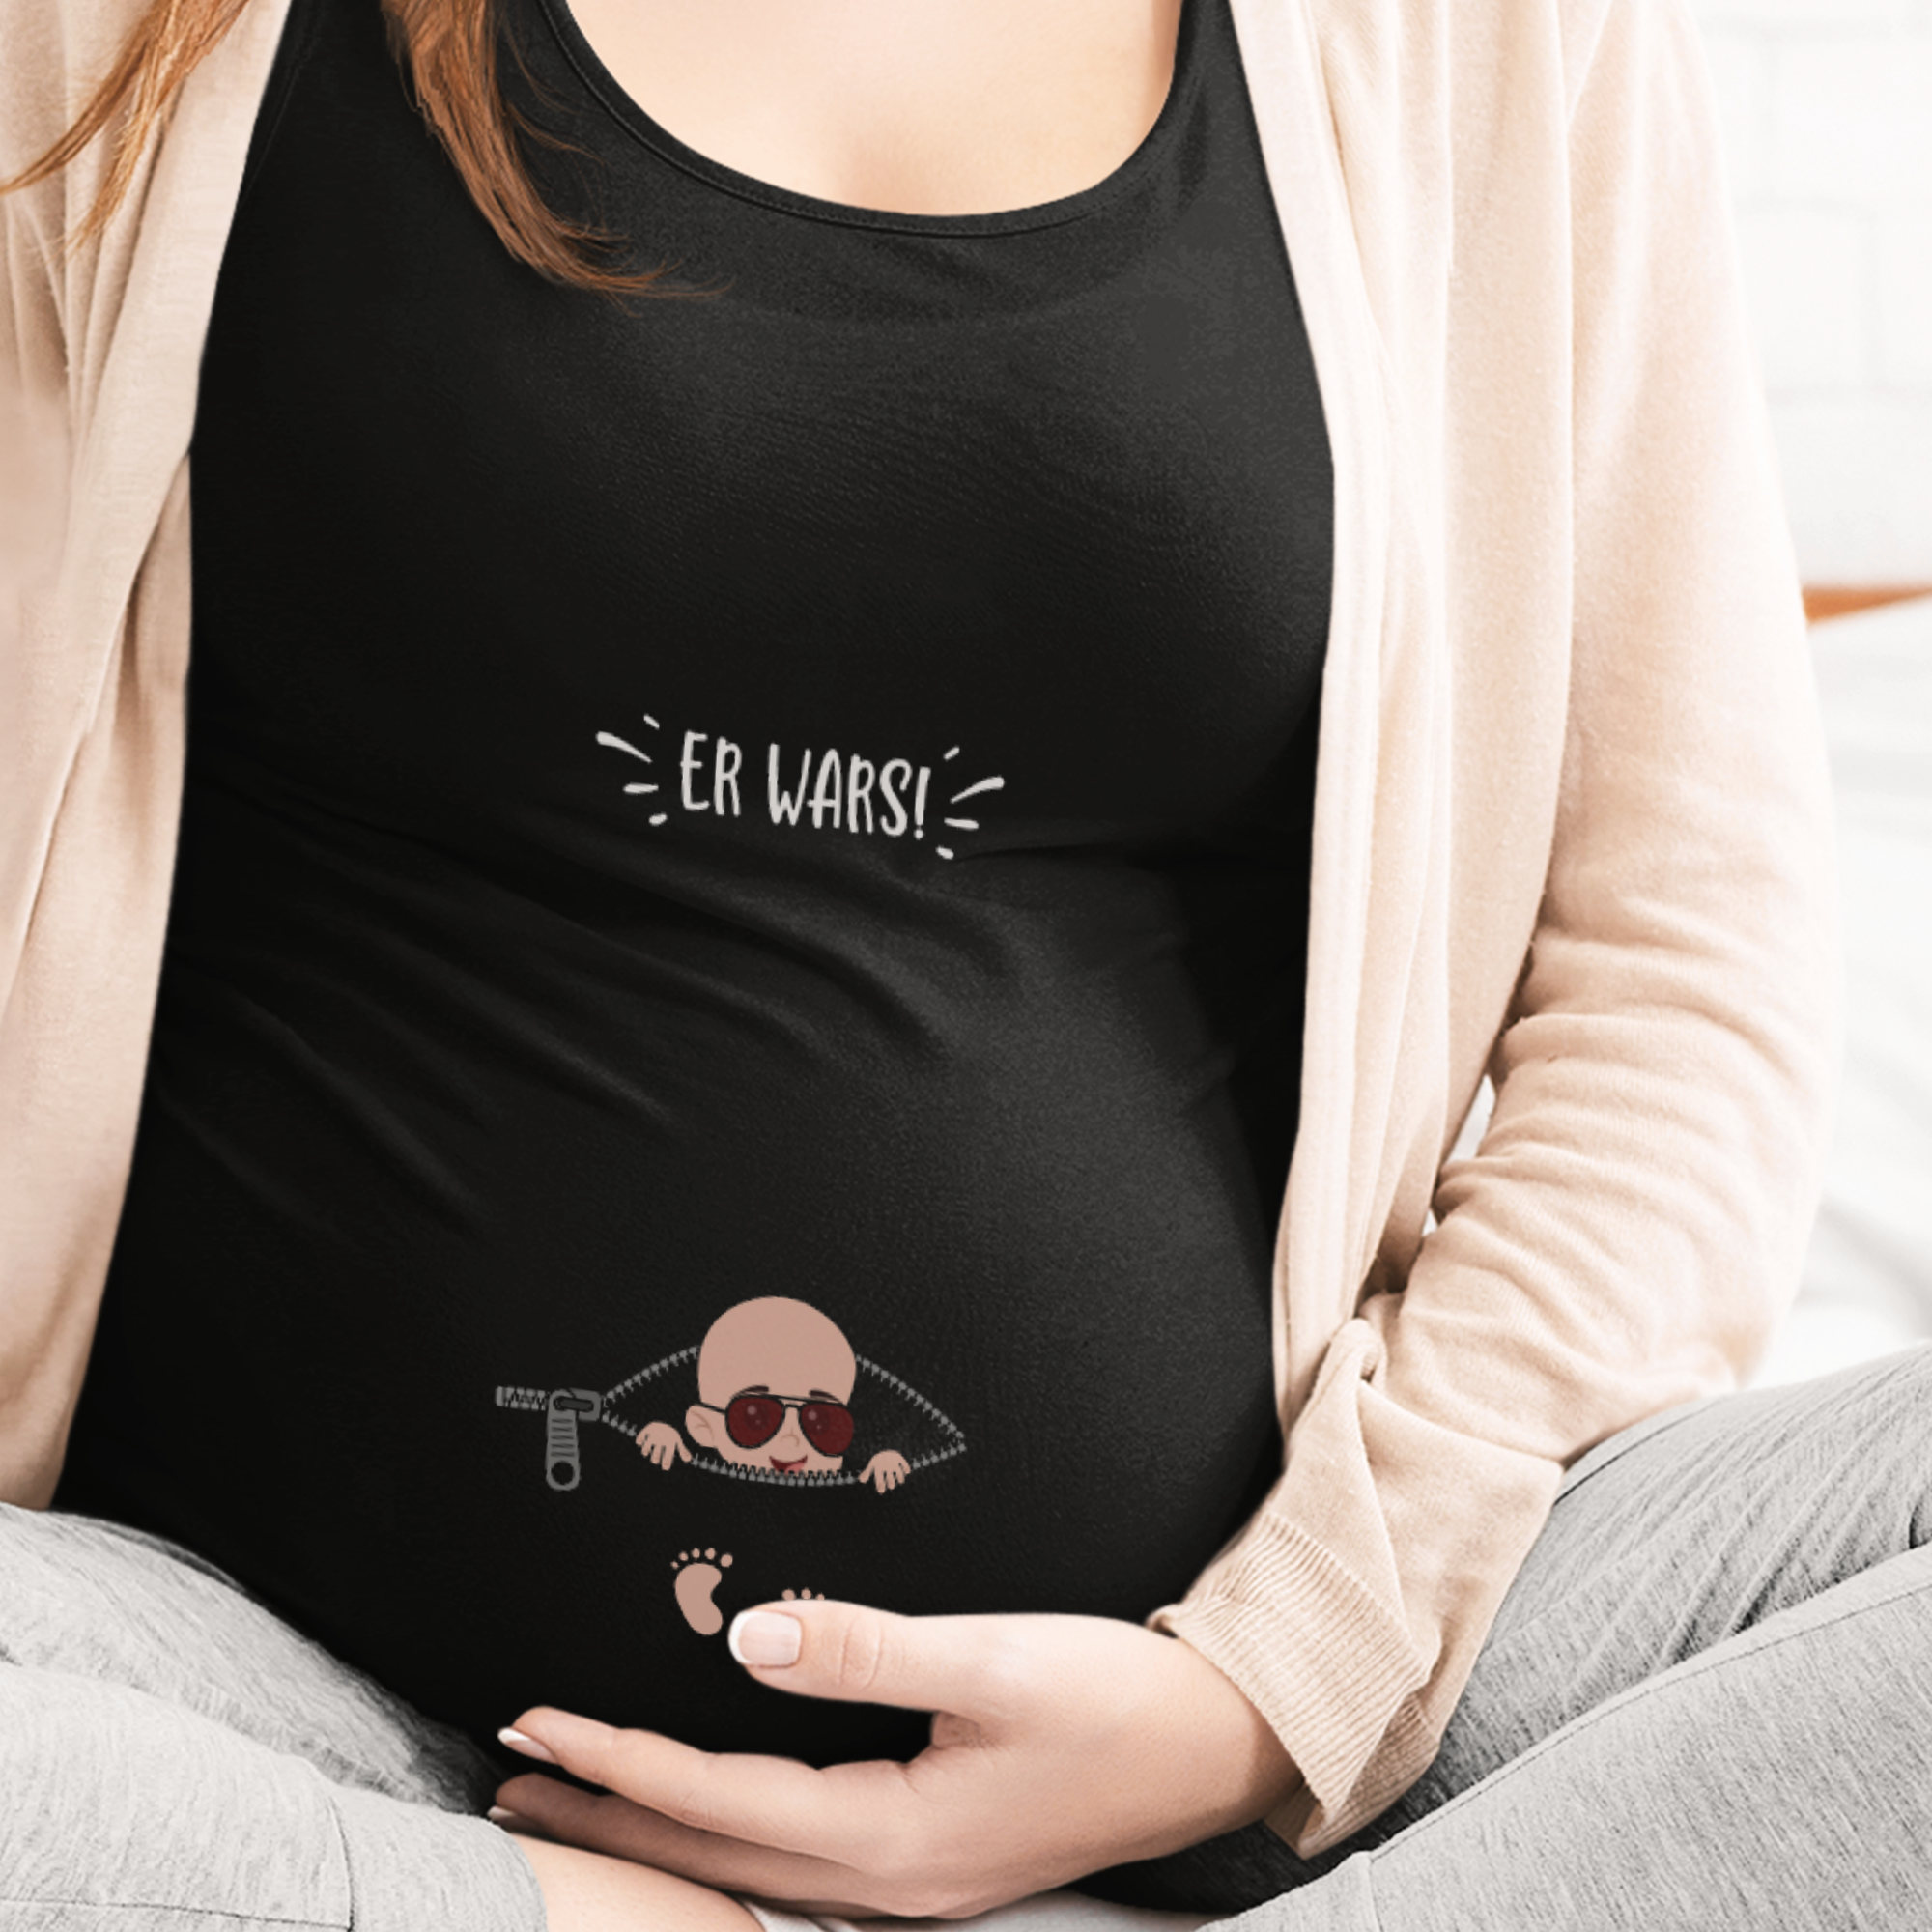 Er Wars! Schwangerschafts T-Shirt - DESIGNSBYJNK5.COM